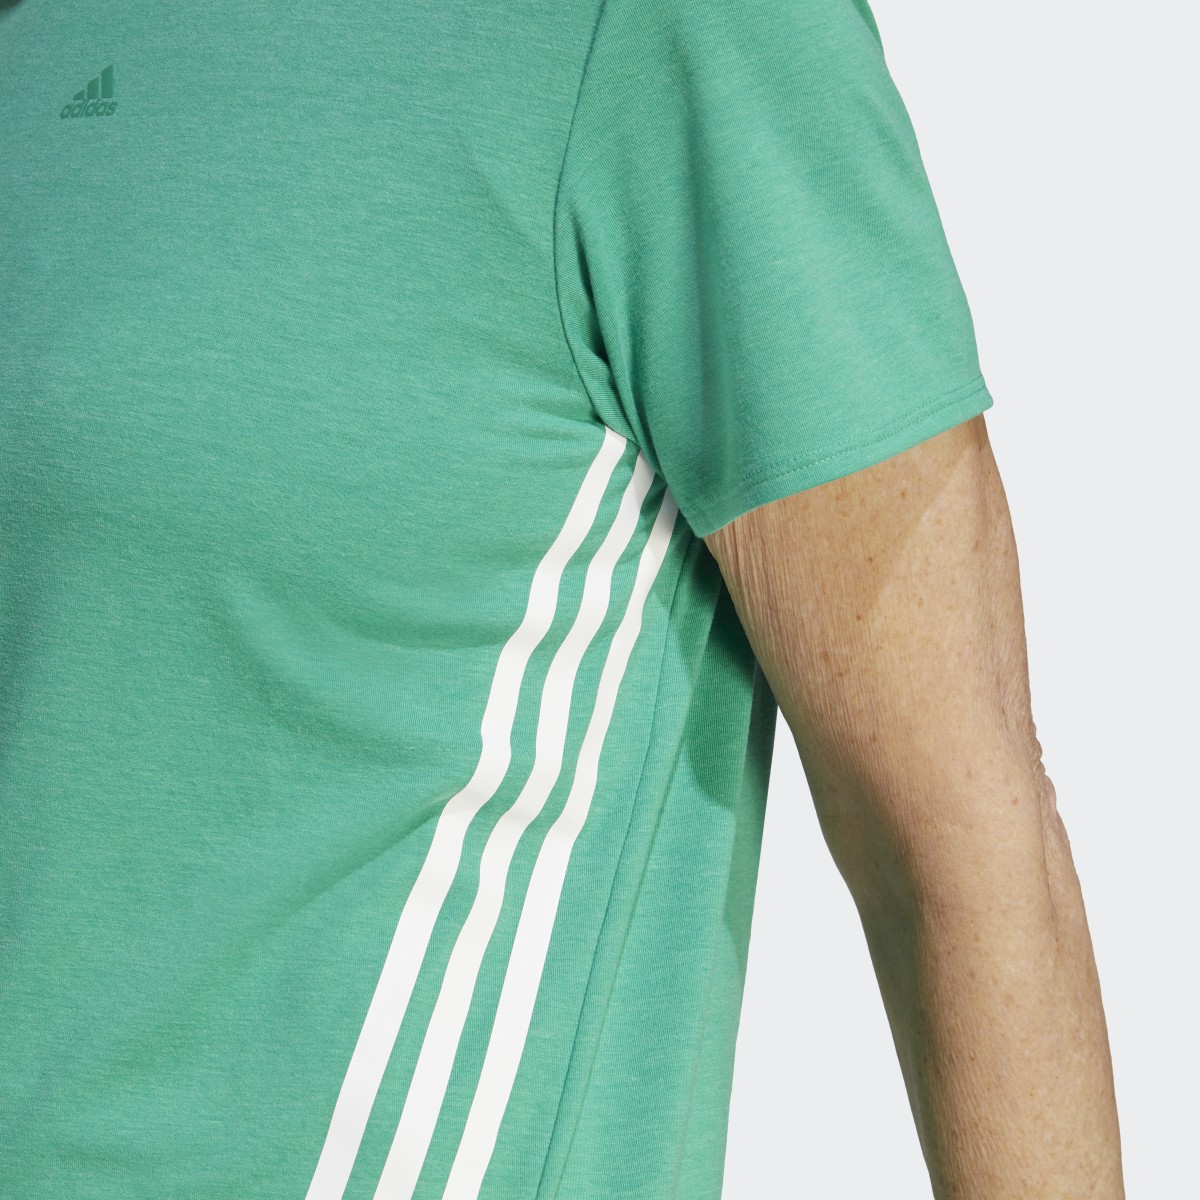 Adidas Train Icons 3-Stripes T-Shirt. 7